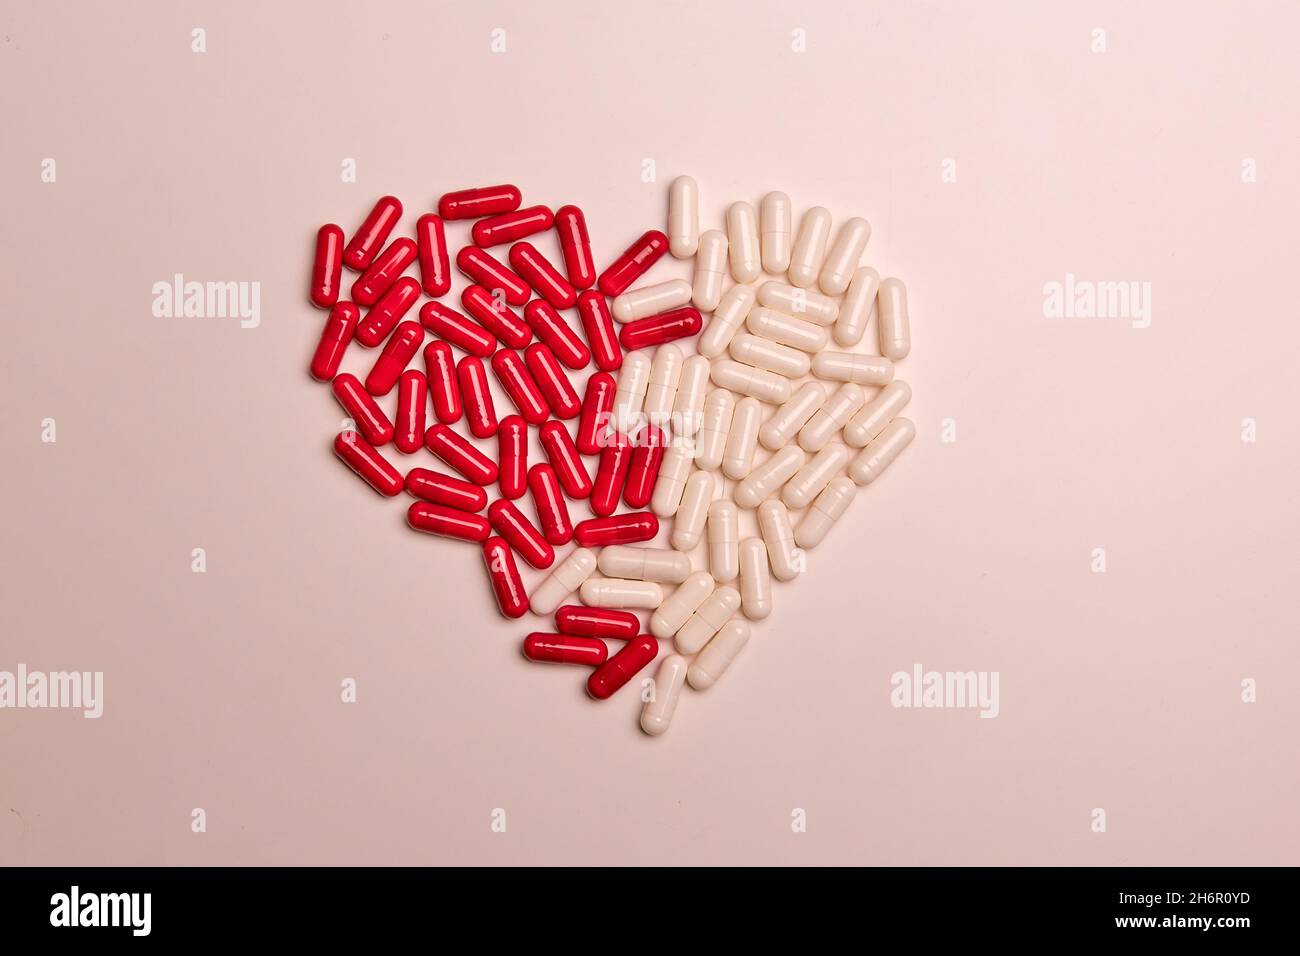 Beaucoup de pilules blanches de capsule vitamine B3 sur un fond coloré.Suppléments et médicaments qui sont bons pour votre santé Banque D'Images